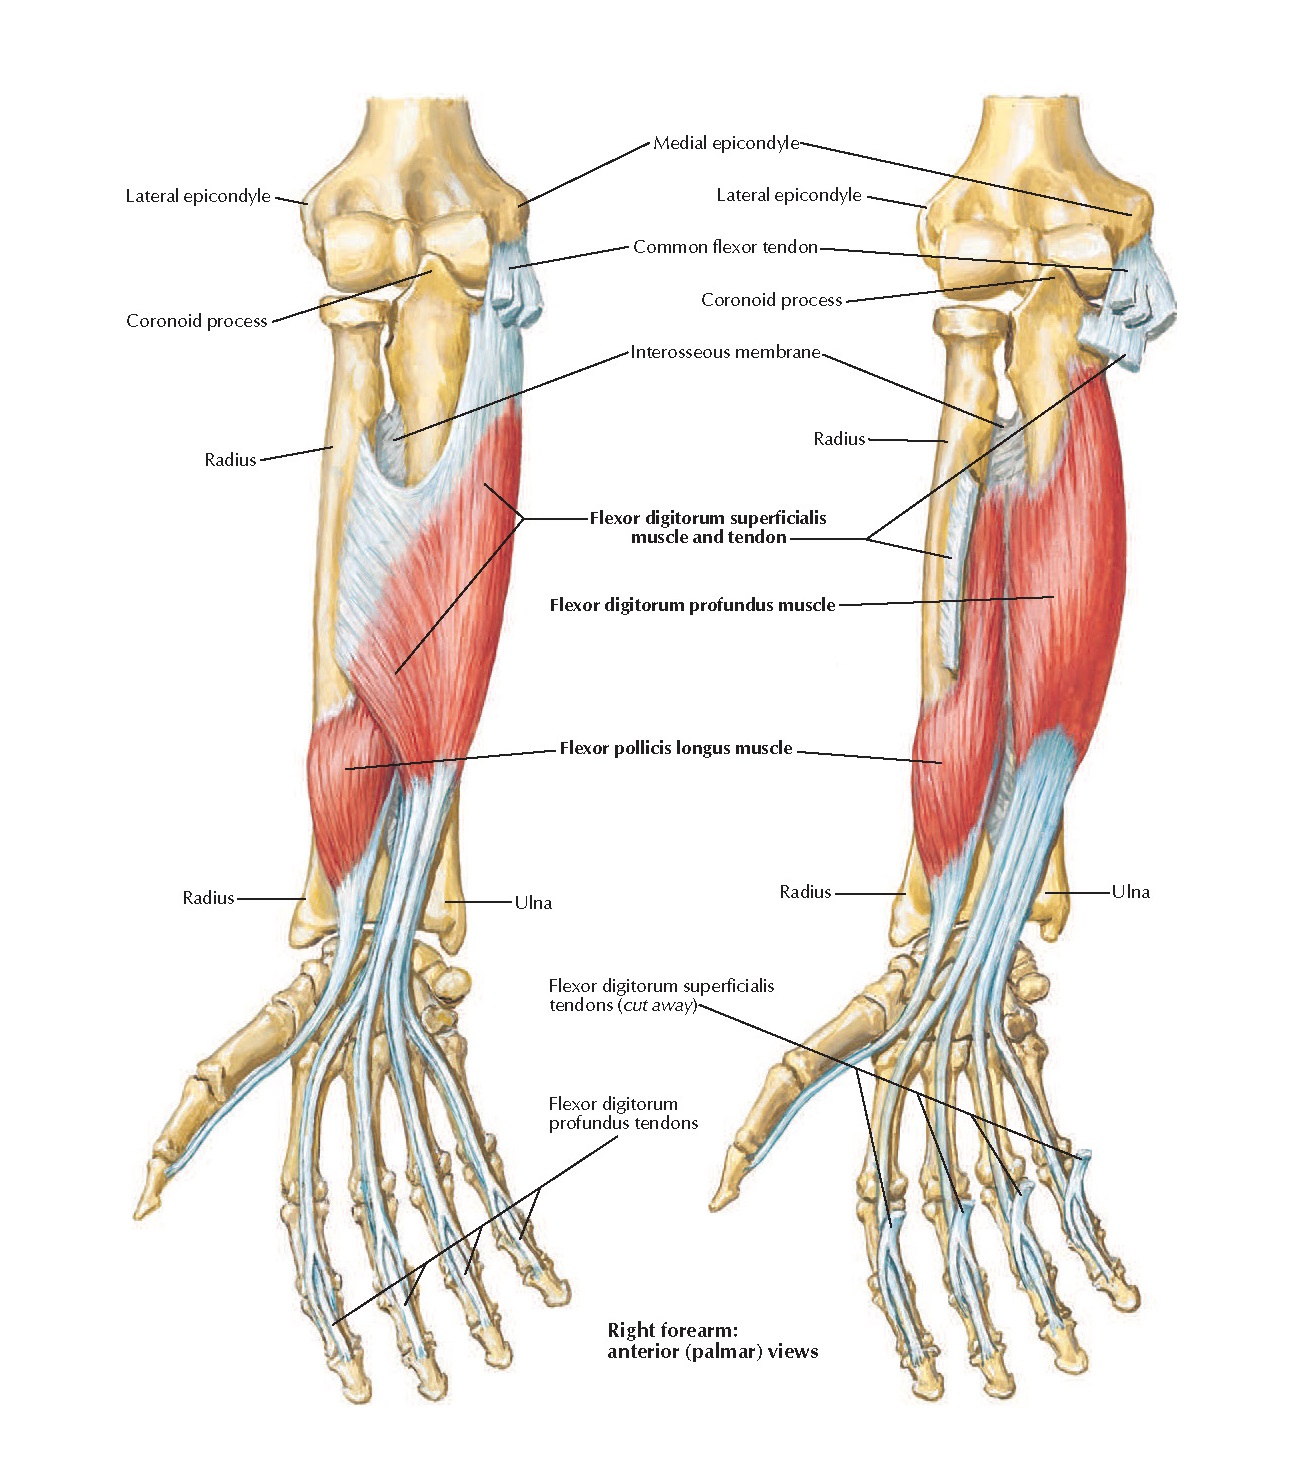 Сгибатели кисти. Флексор Карпи Радиалис мышца. Поверхностные мышцы предплечья сгибатели. Мышцы сгибатели пальцев кисти. Поверхностный и глубокий сгибатель пальцев кисти.